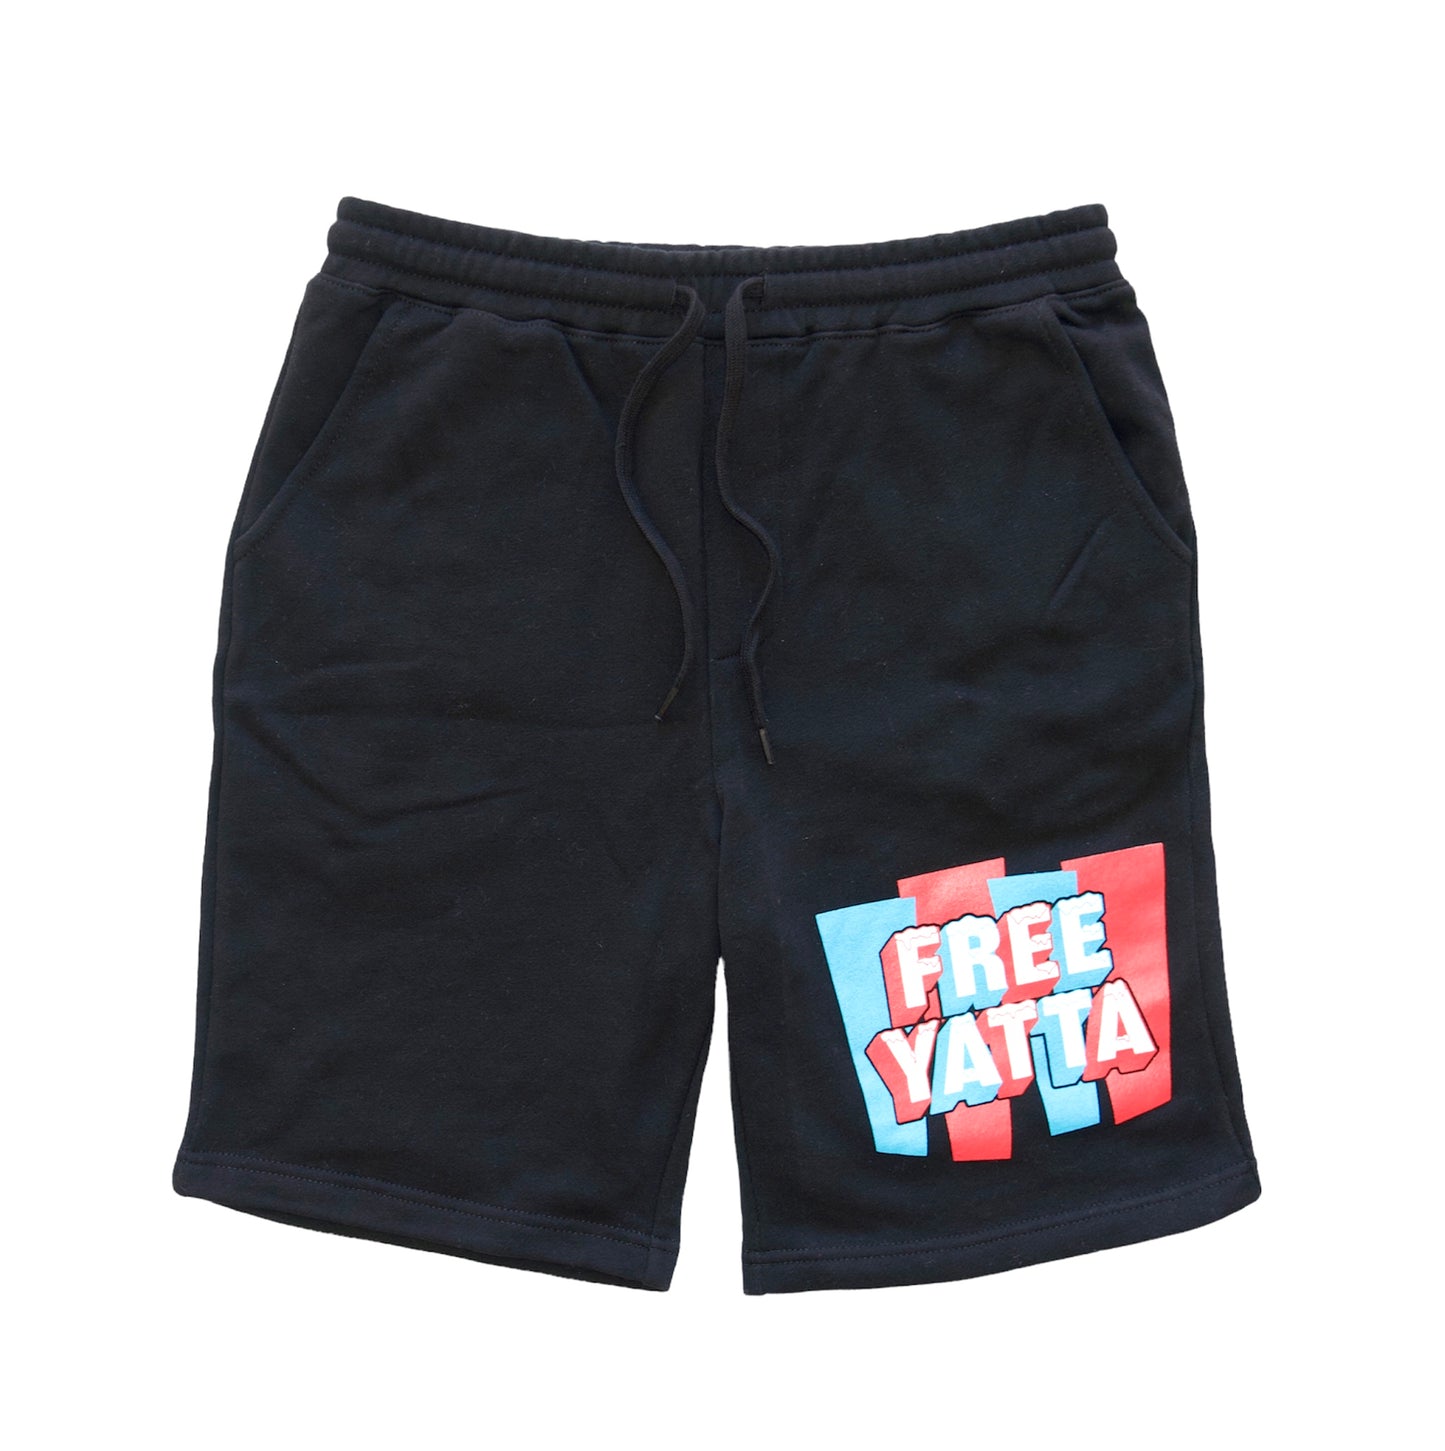 Black “Free Yatta” Fleece Shorts